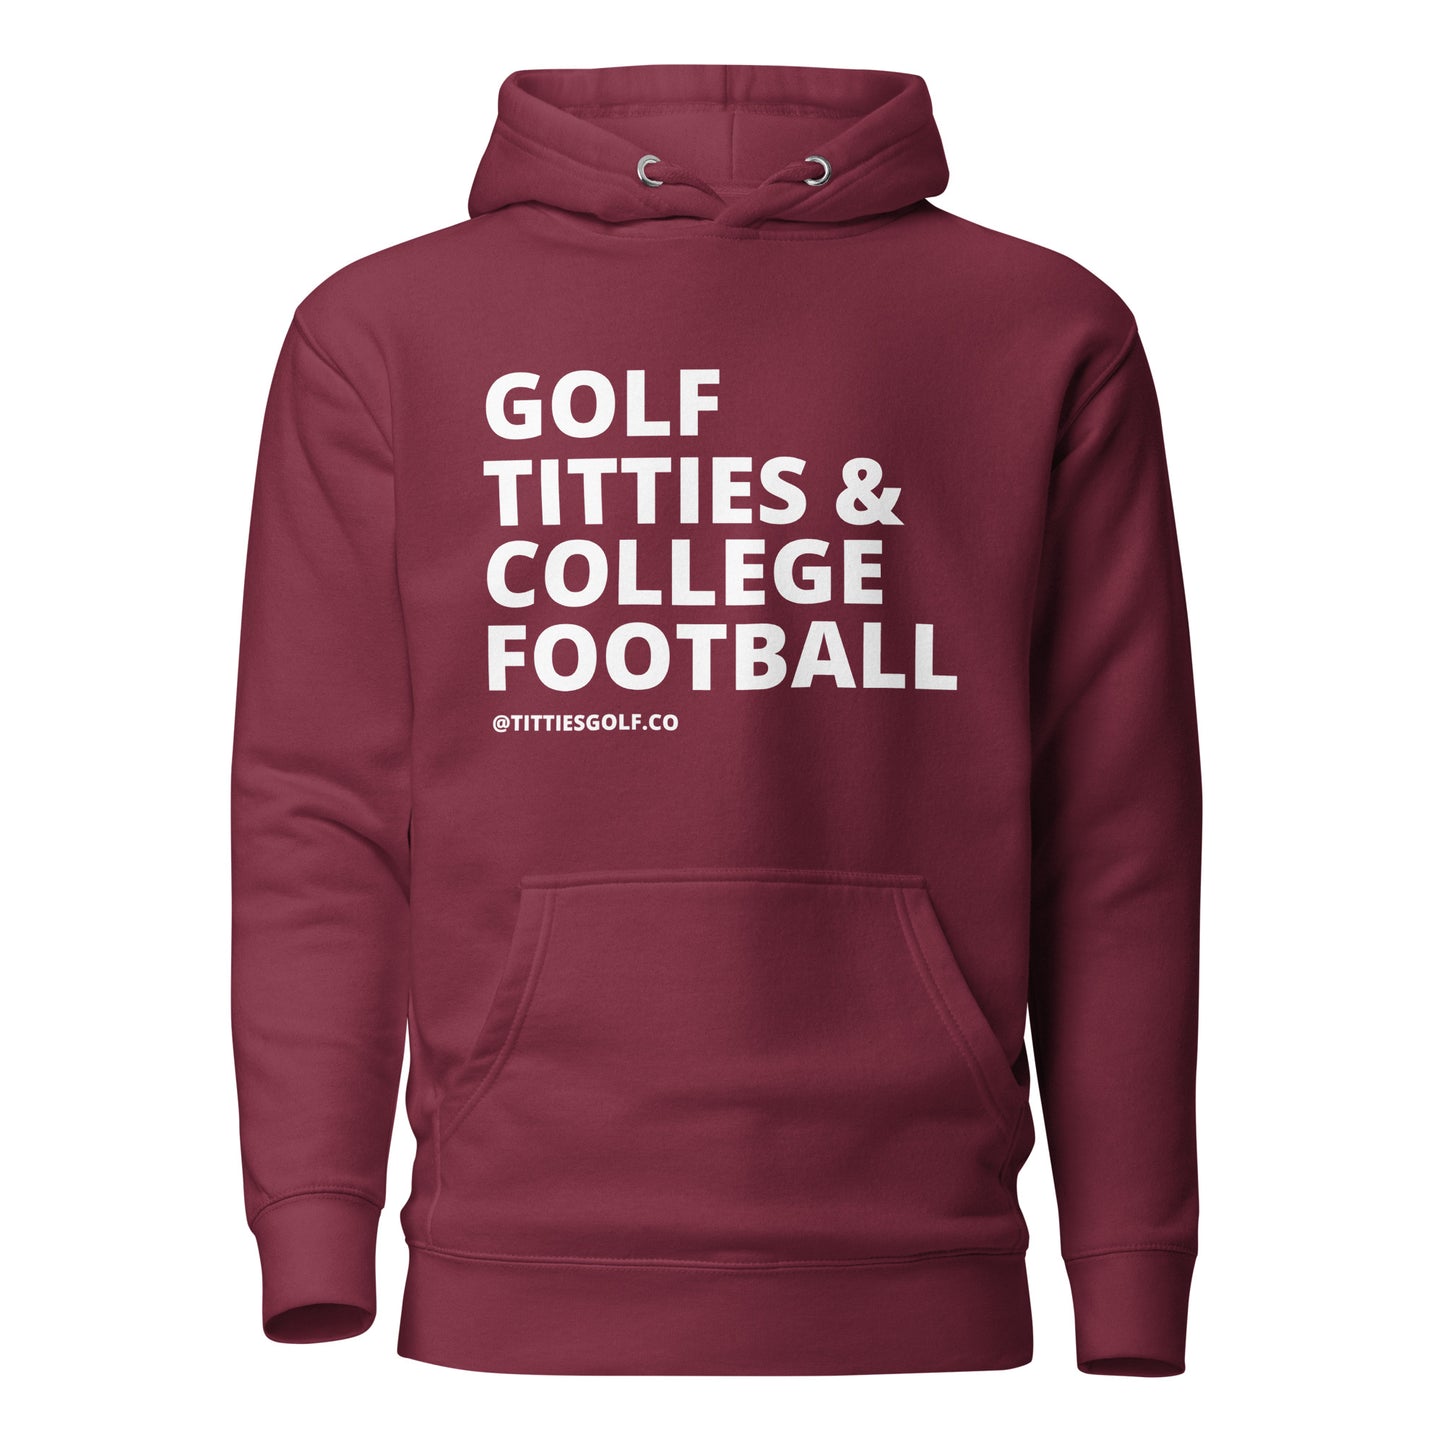 Golf, Titties & College Football Hoodie